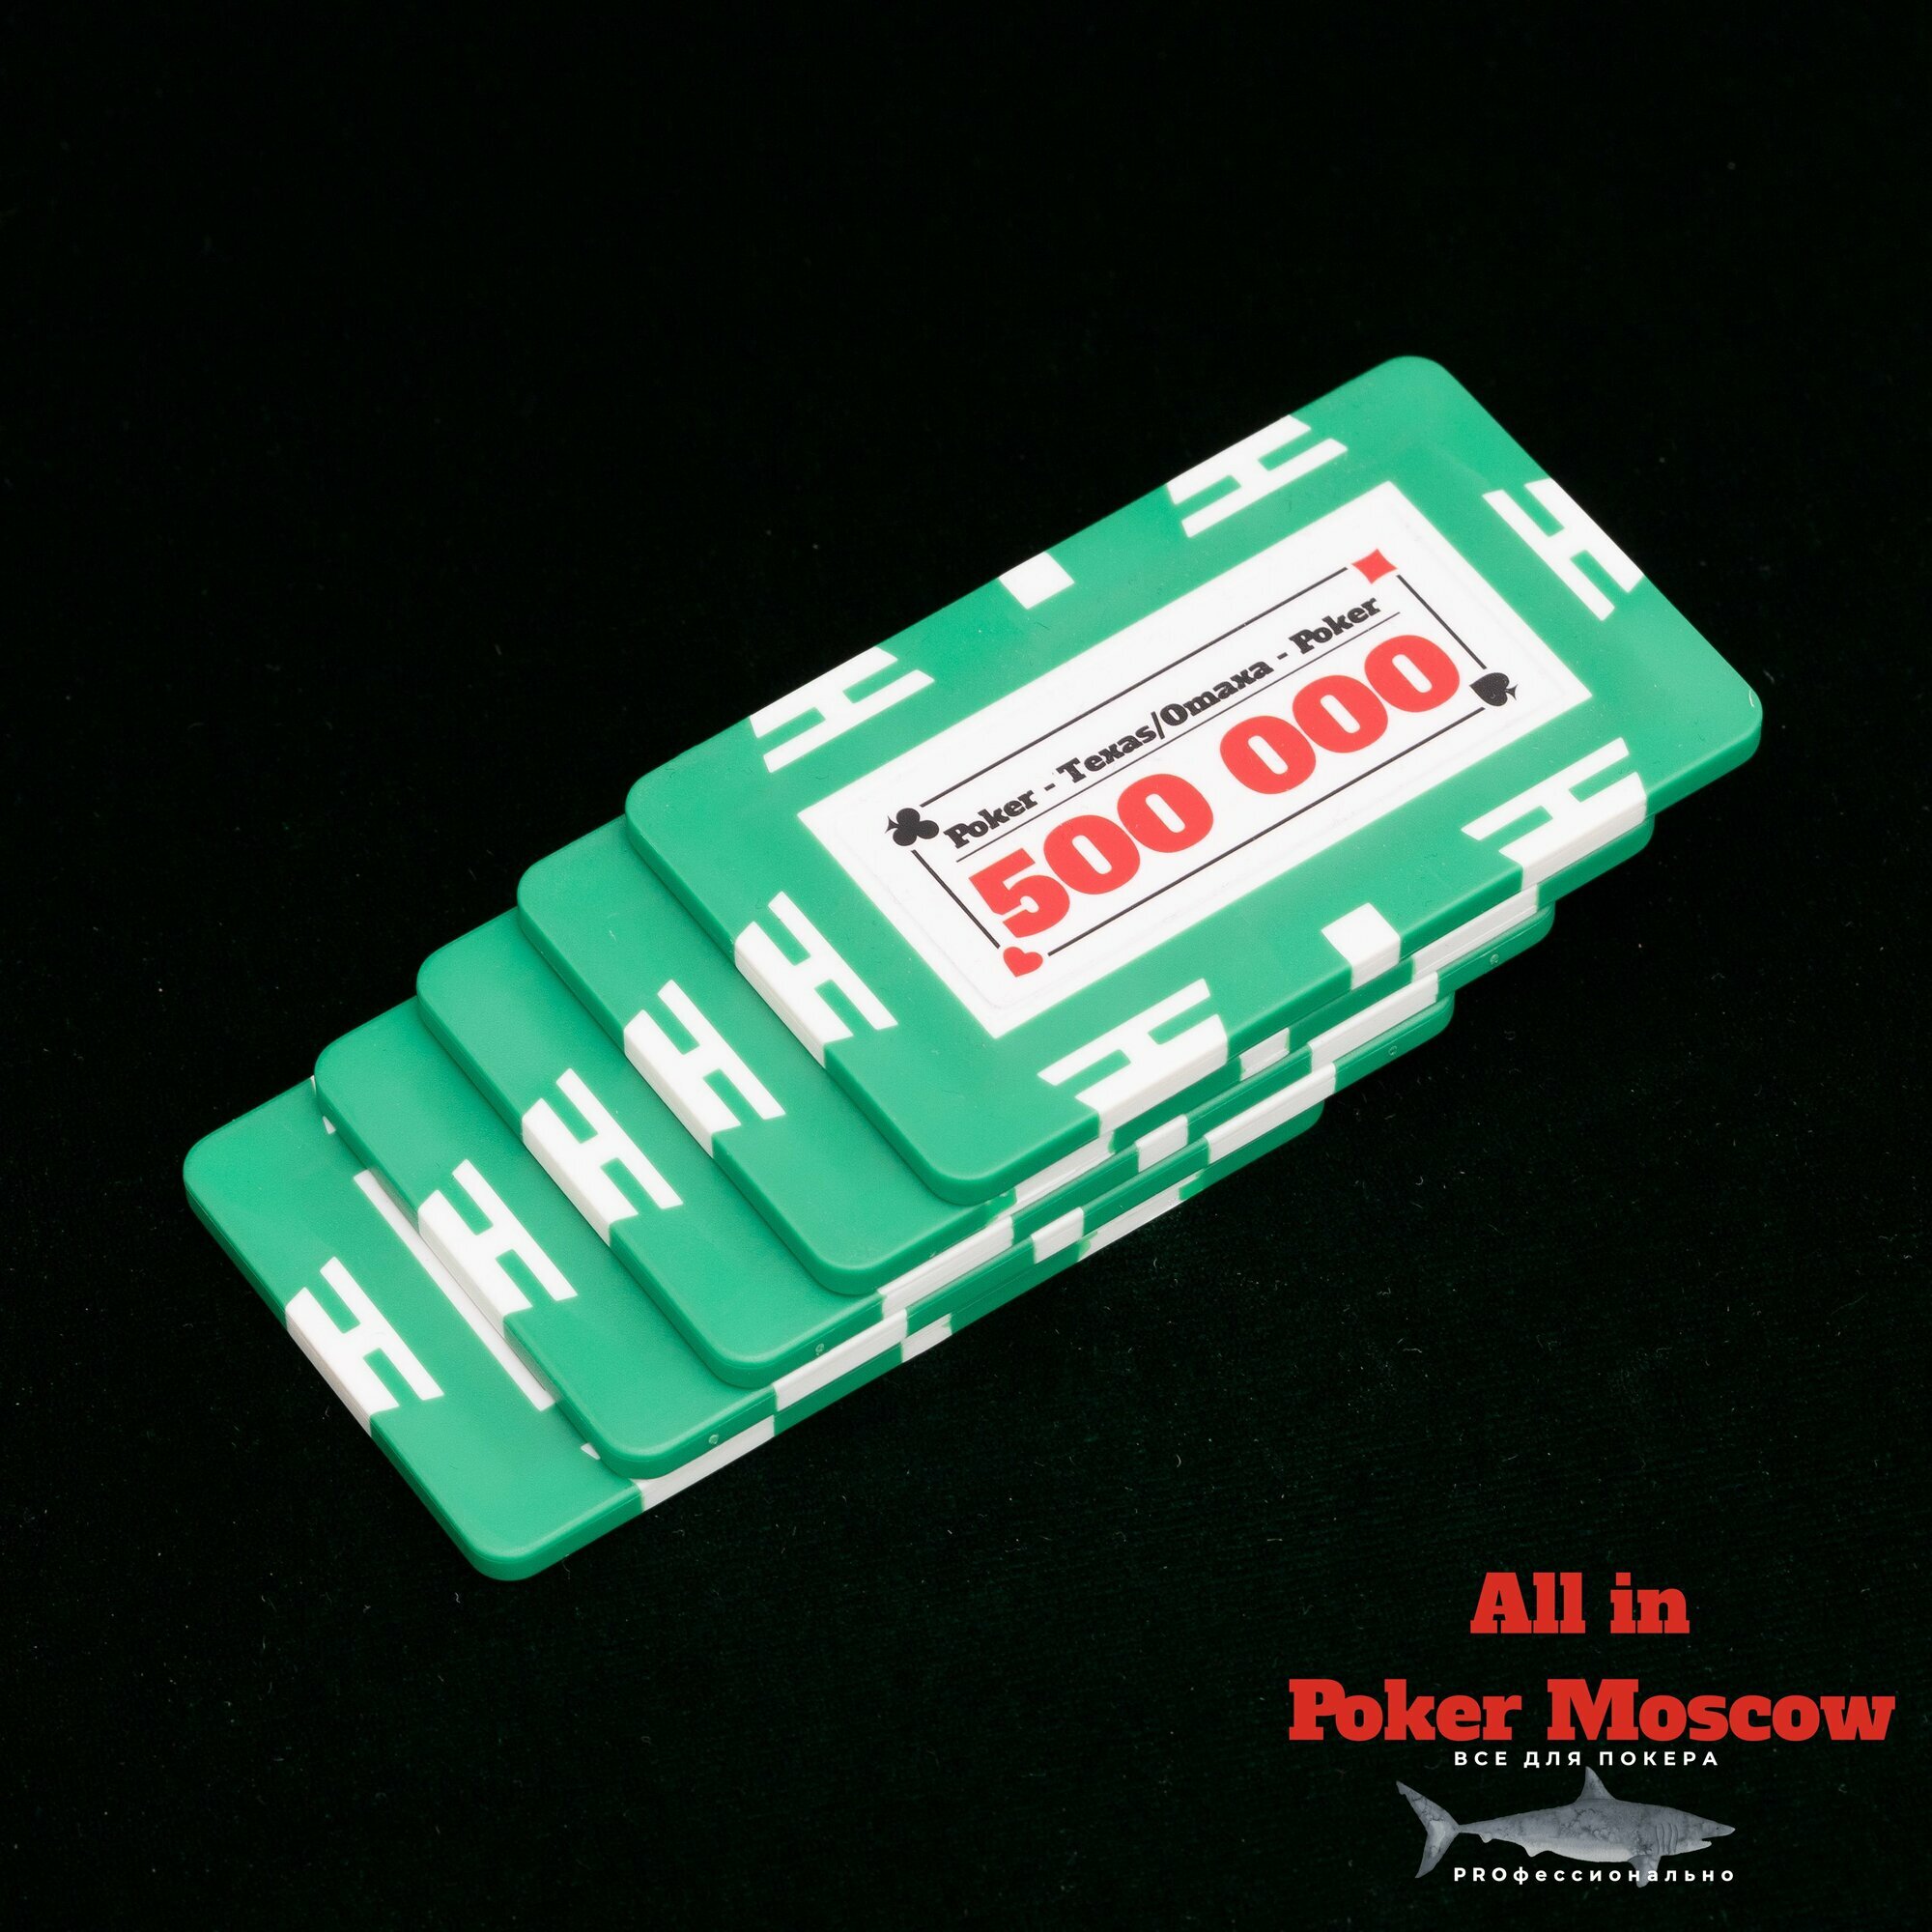 Фишки прямоугольные для покера( Плаки) номинал 500 000 - 5 штук